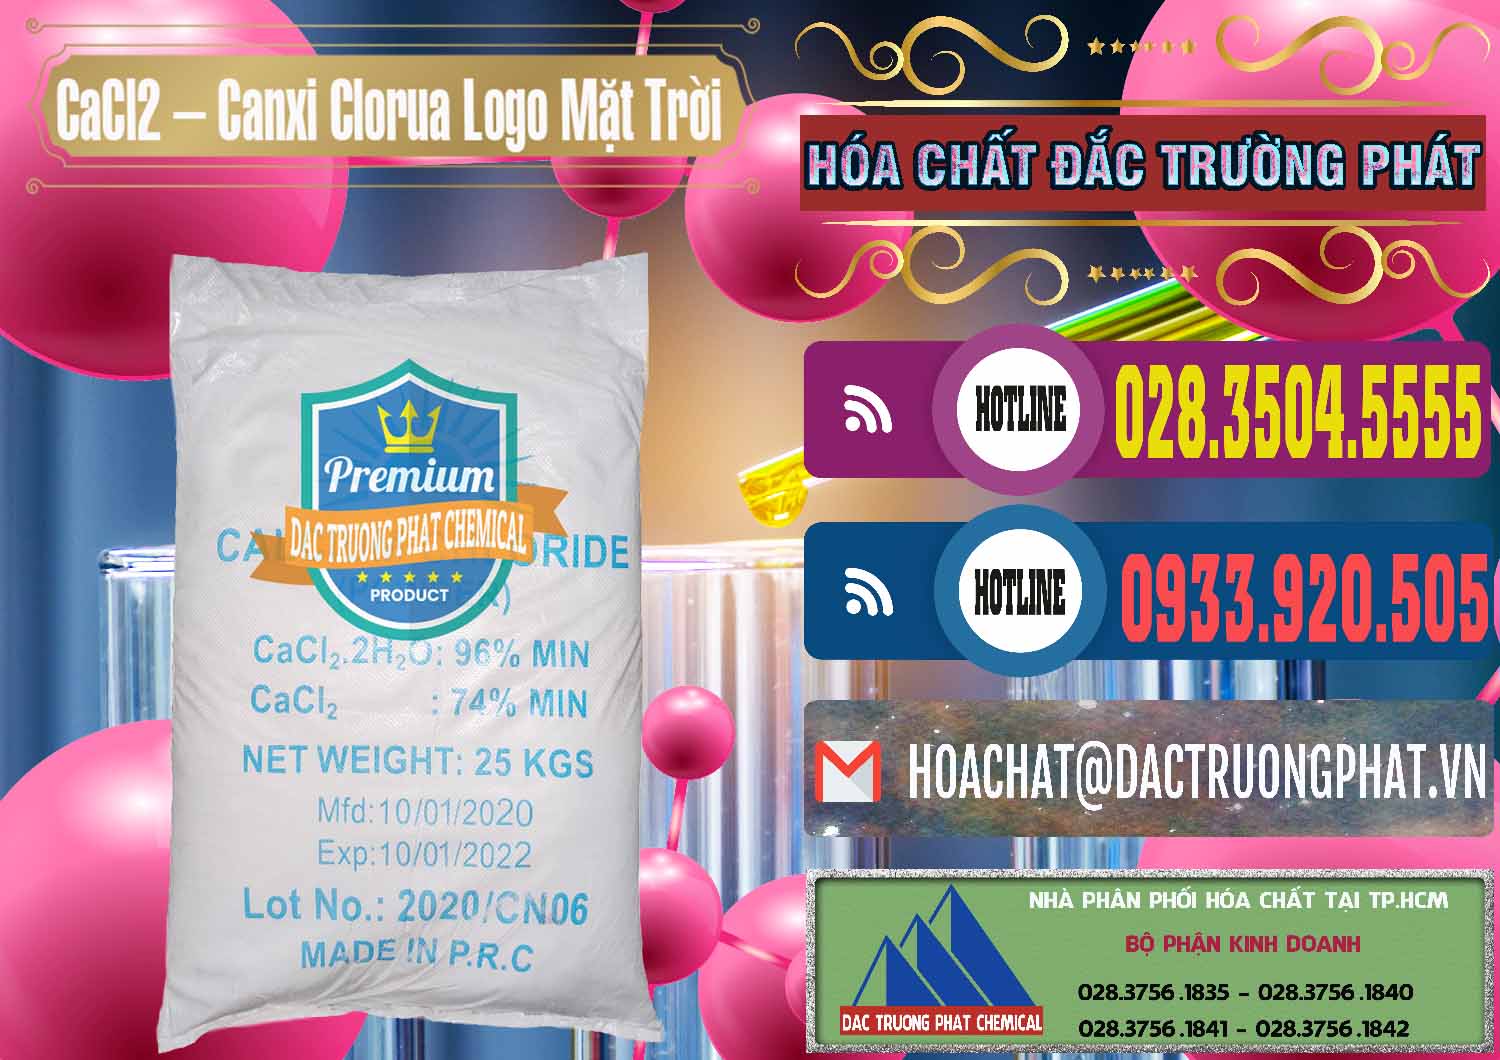 Đơn vị chuyên bán _ cung ứng CaCl2 – Canxi Clorua 96% Logo Mặt Trời Trung Quốc China - 0041 - Công ty cung cấp và bán hóa chất tại TP.HCM - muabanhoachat.com.vn